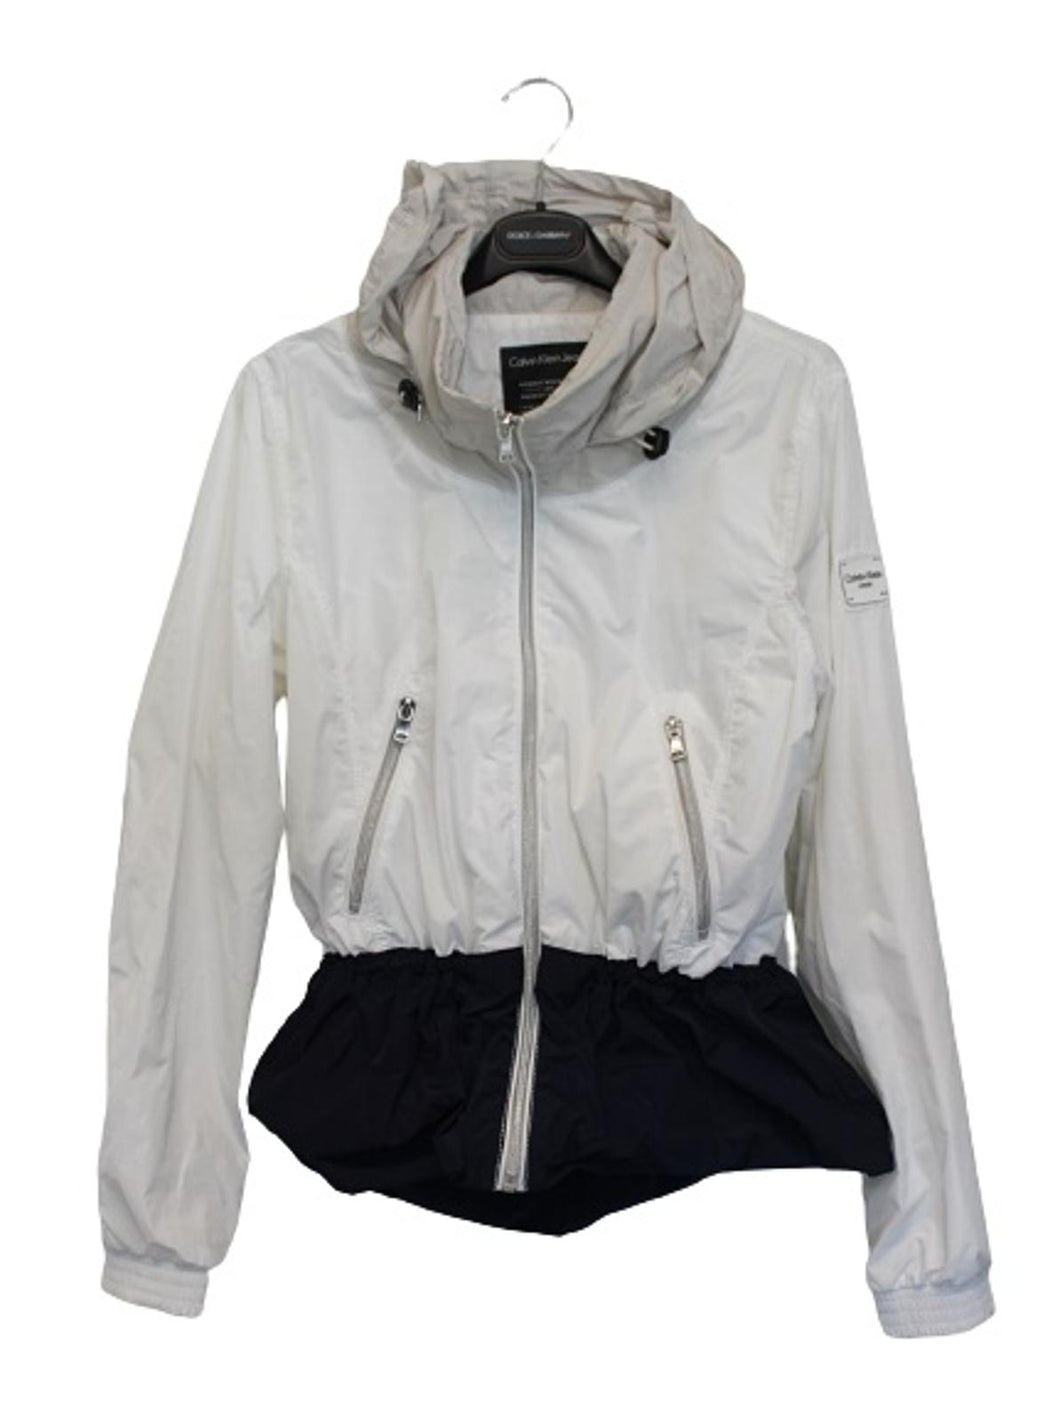 CALVIN KLEIN JEANS Ladies White Multi Long Sleeve Full Zip Hooded Jacket XL